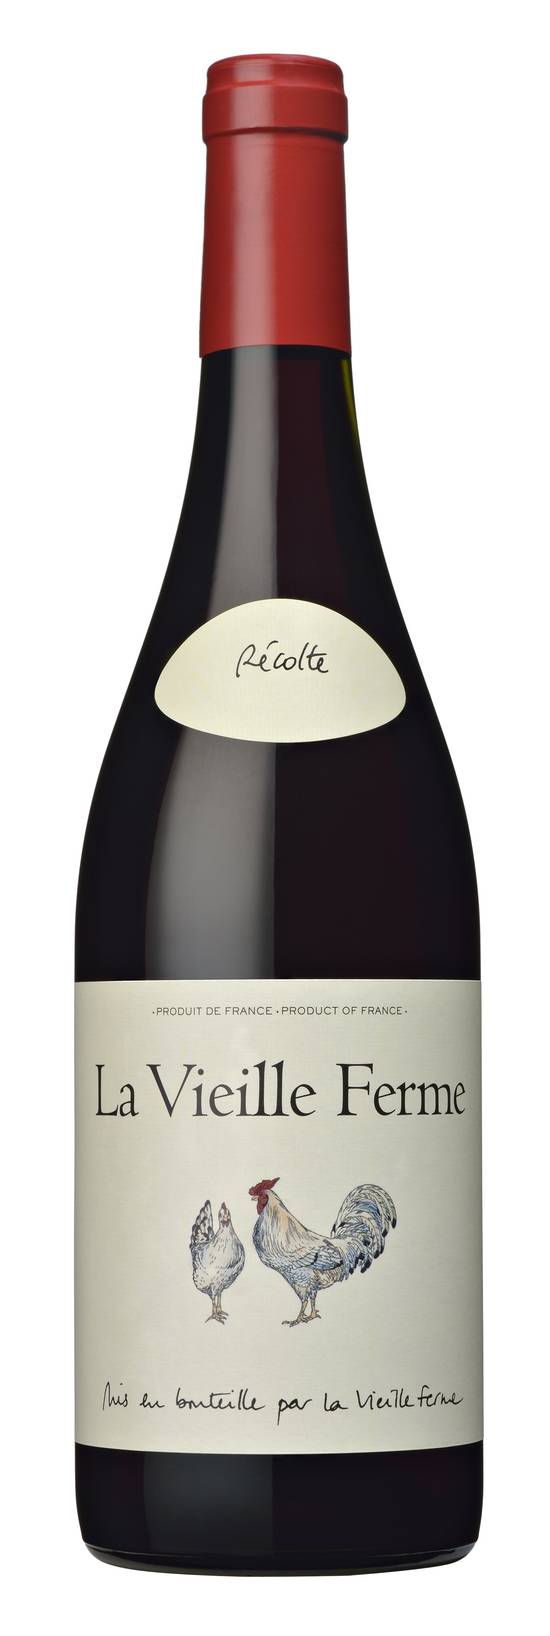 La Vieille Ferme - Vin rouge côtes du ventoux AOP domestique (750 ml)